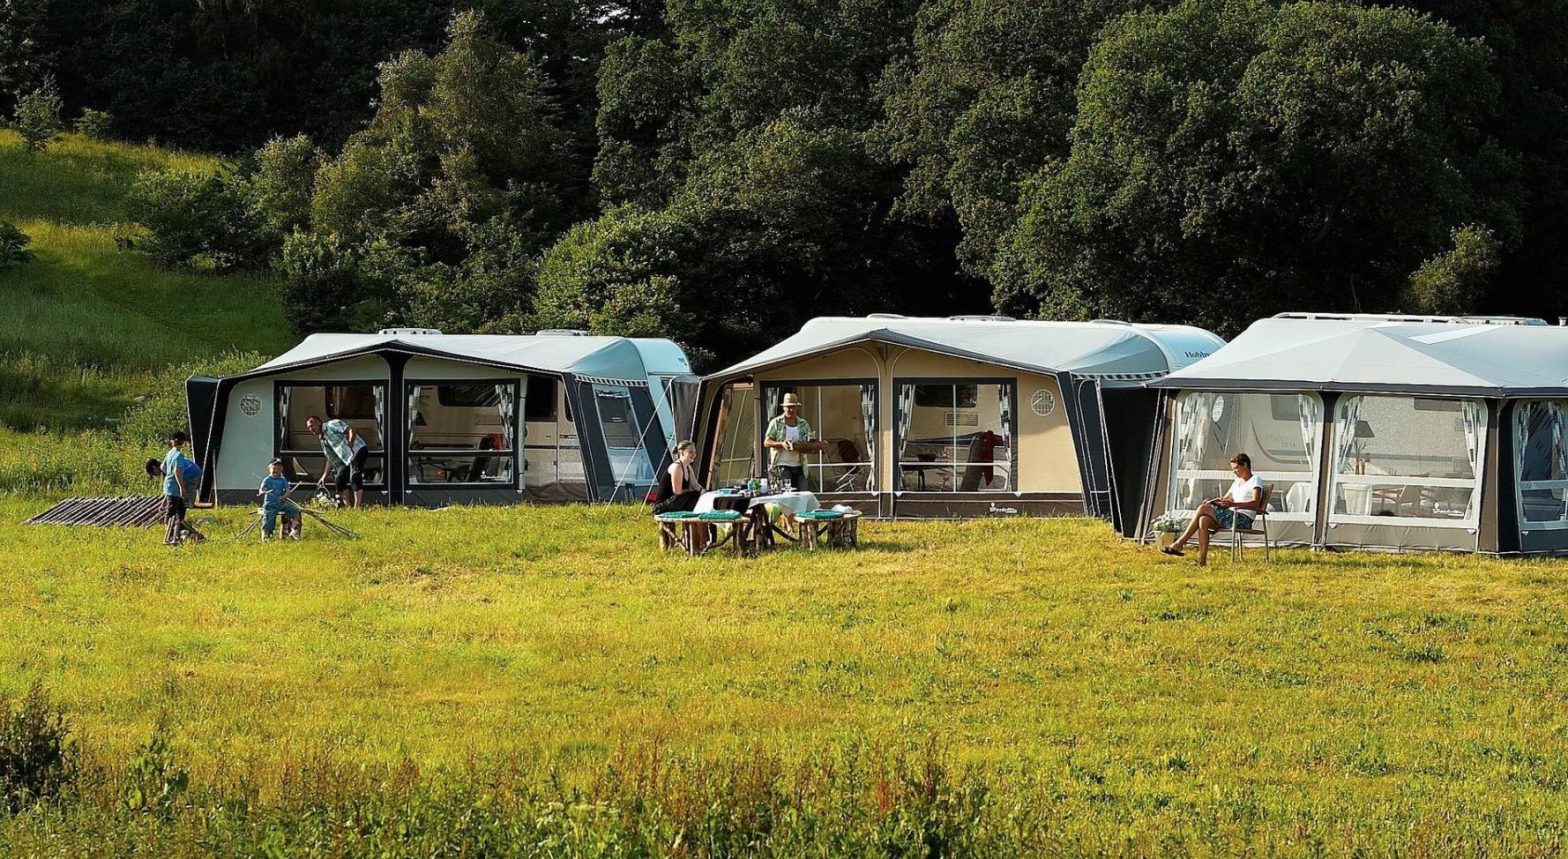 Pidgin Ongemak Mm 5 kampeertips voor introverte mensen - Campingtrend